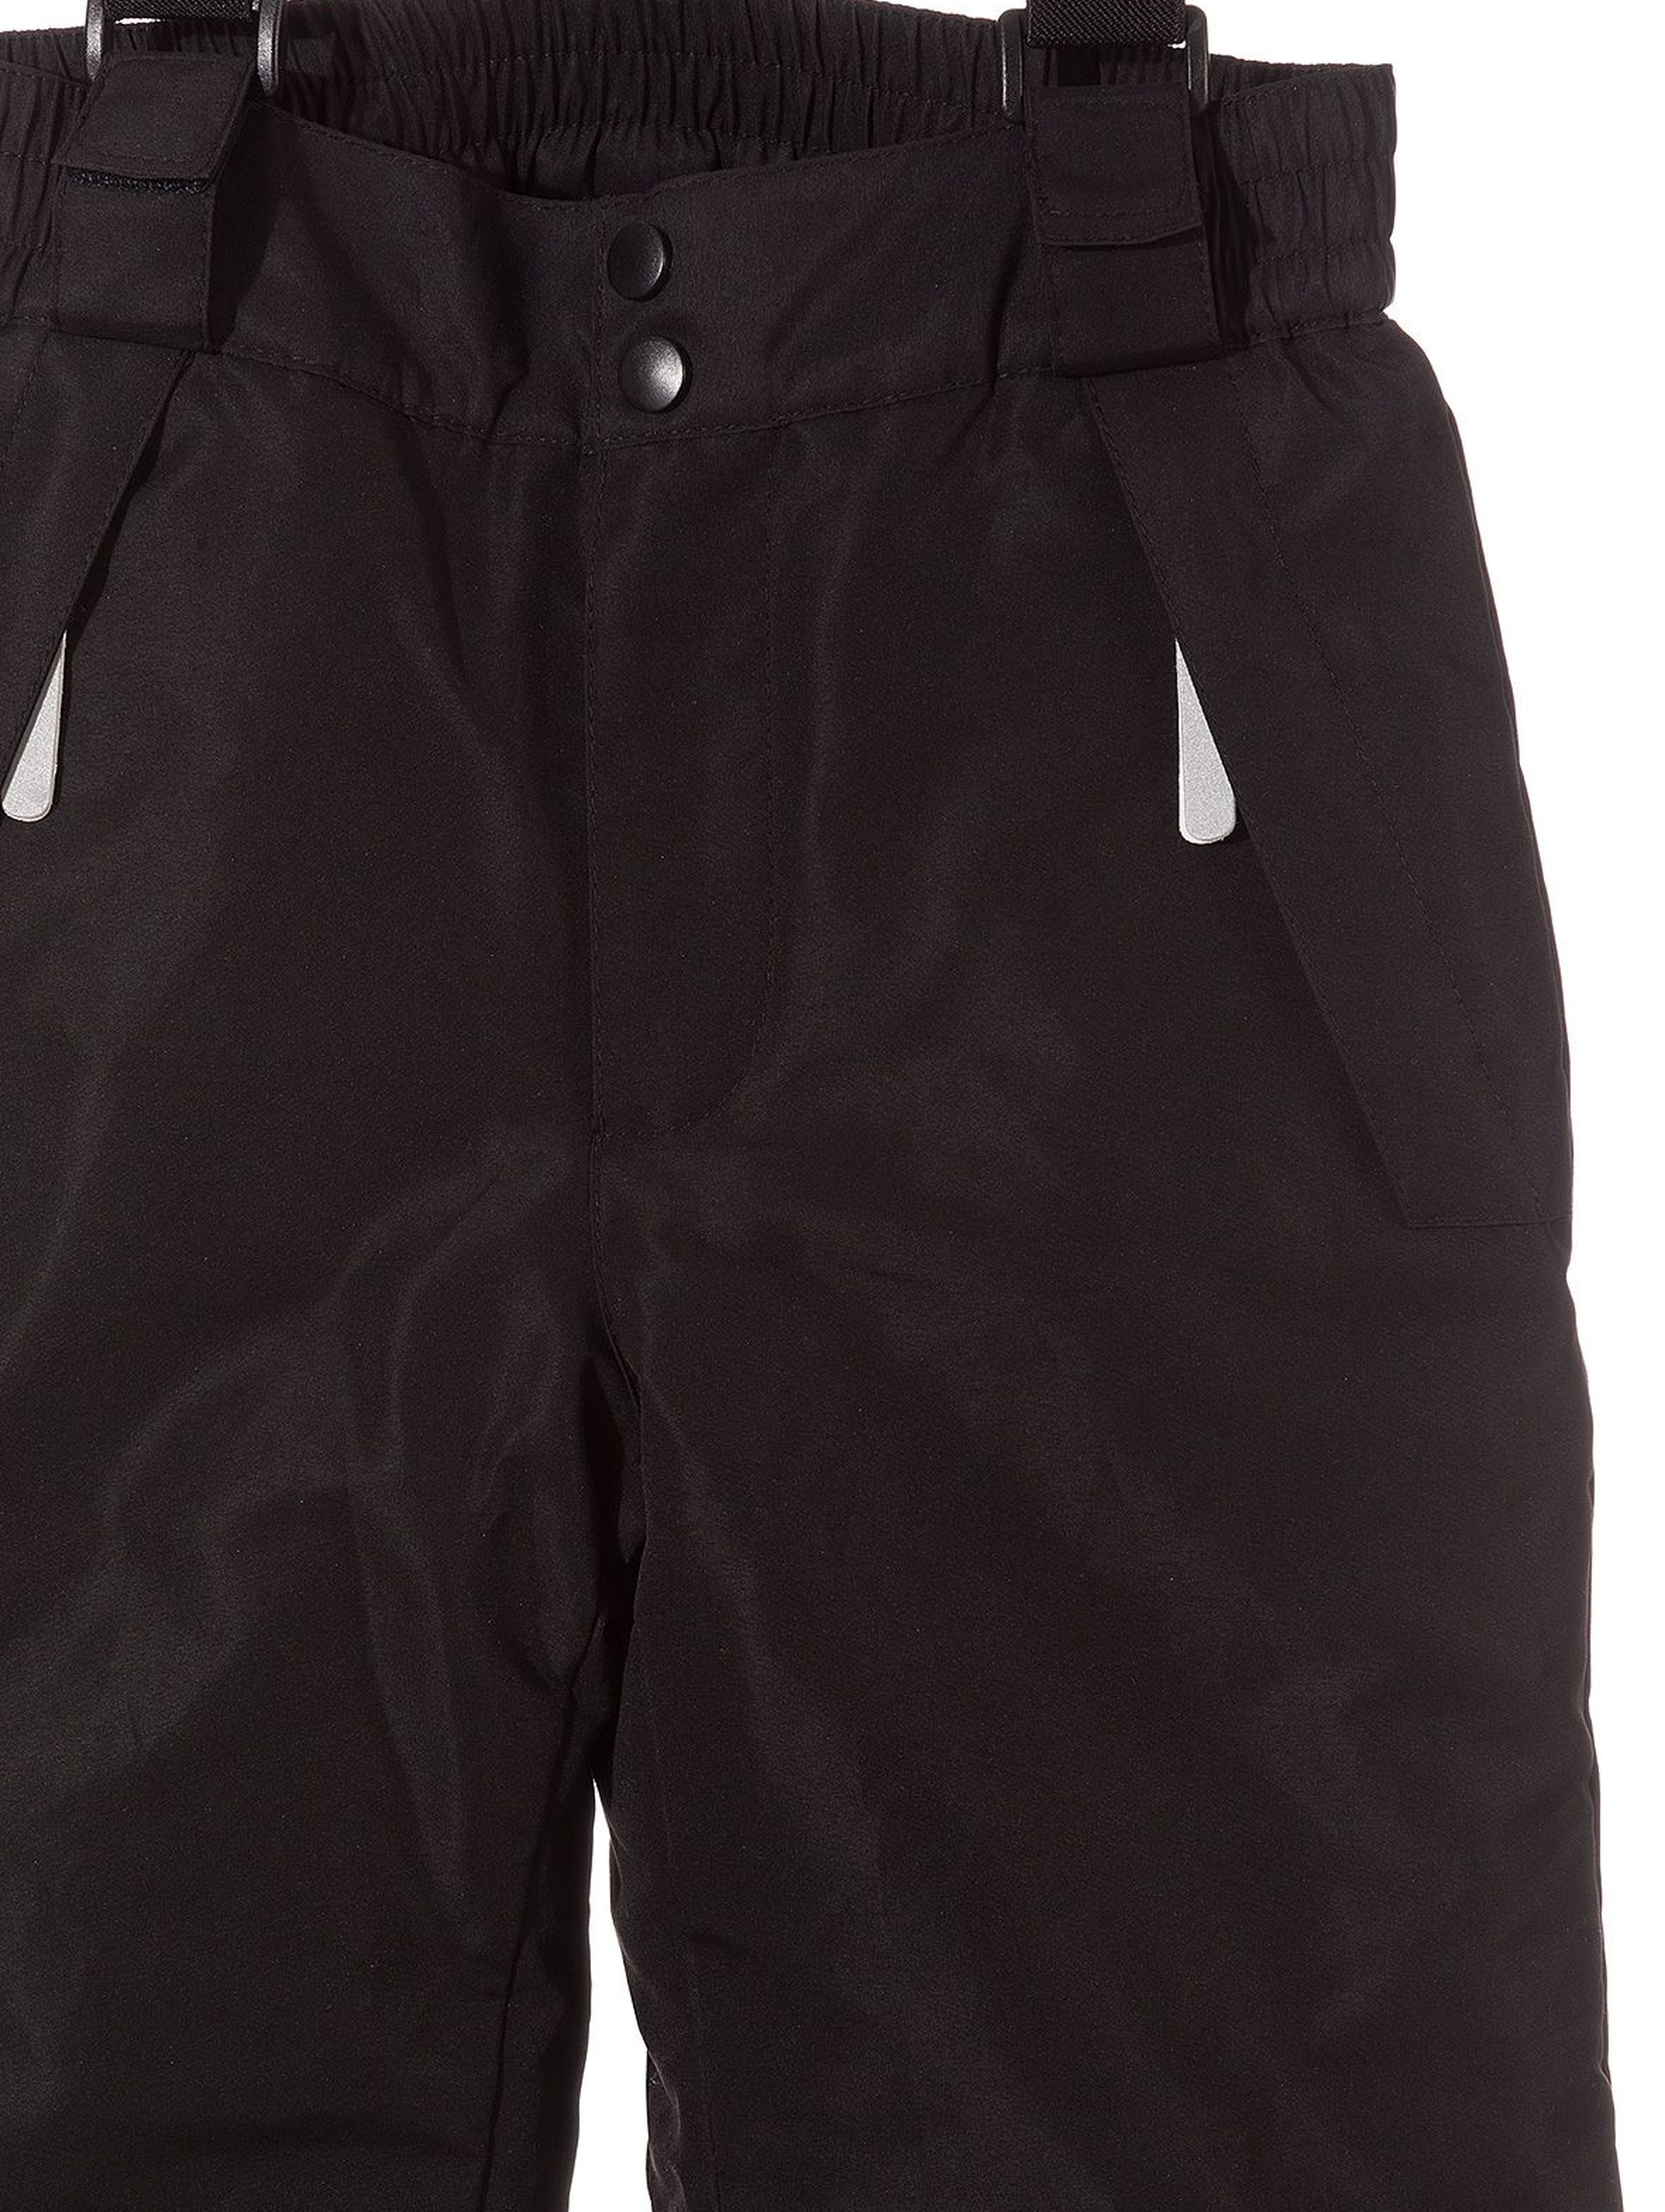 Spodnie narciarskie dziewczęce basic- czarne z elementami odblaskowymi